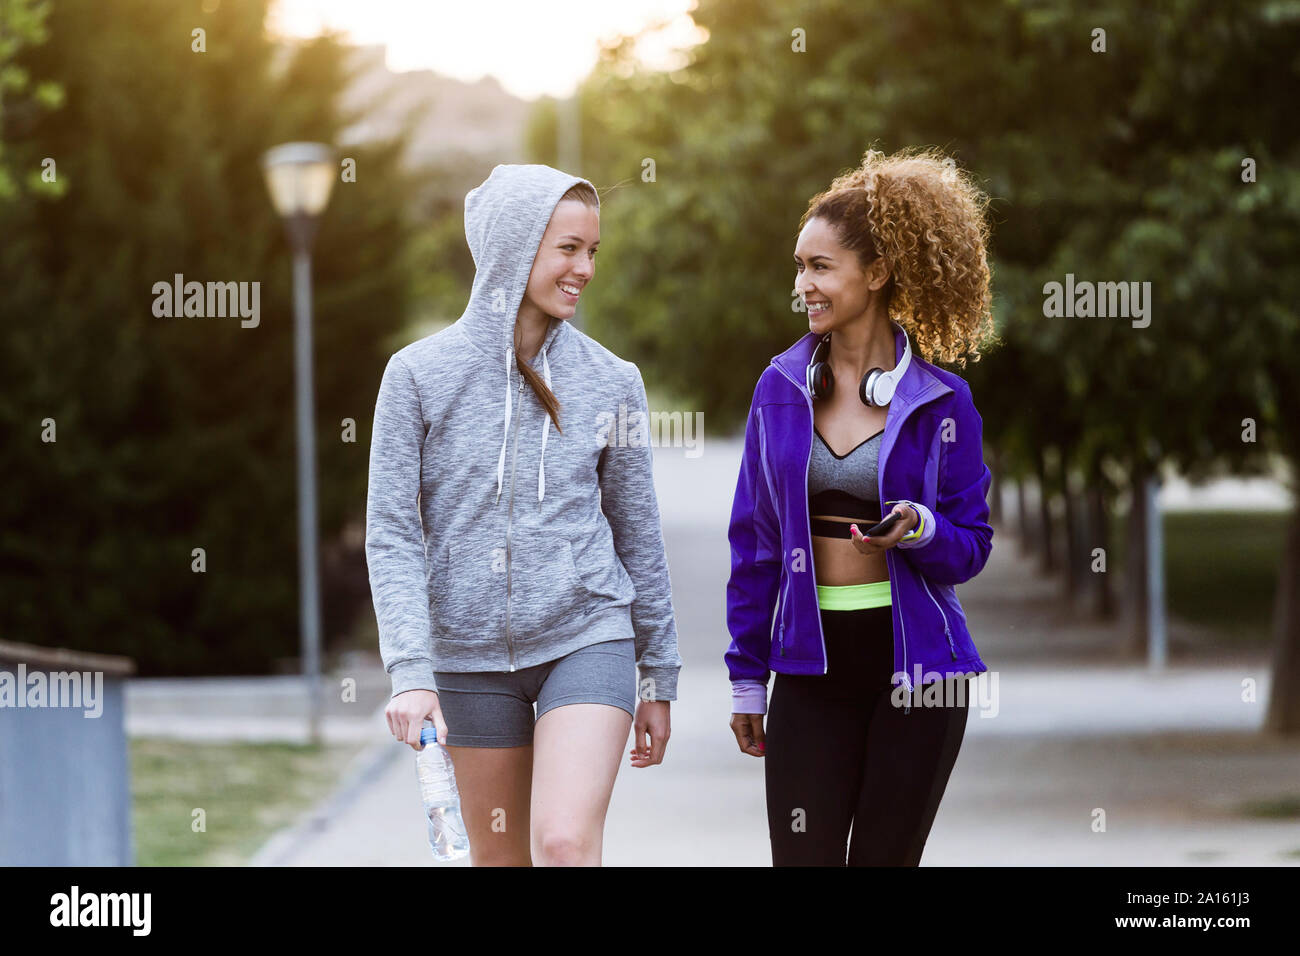 Deux jeunes femmes sportive smiling walking in park après entraînement Banque D'Images